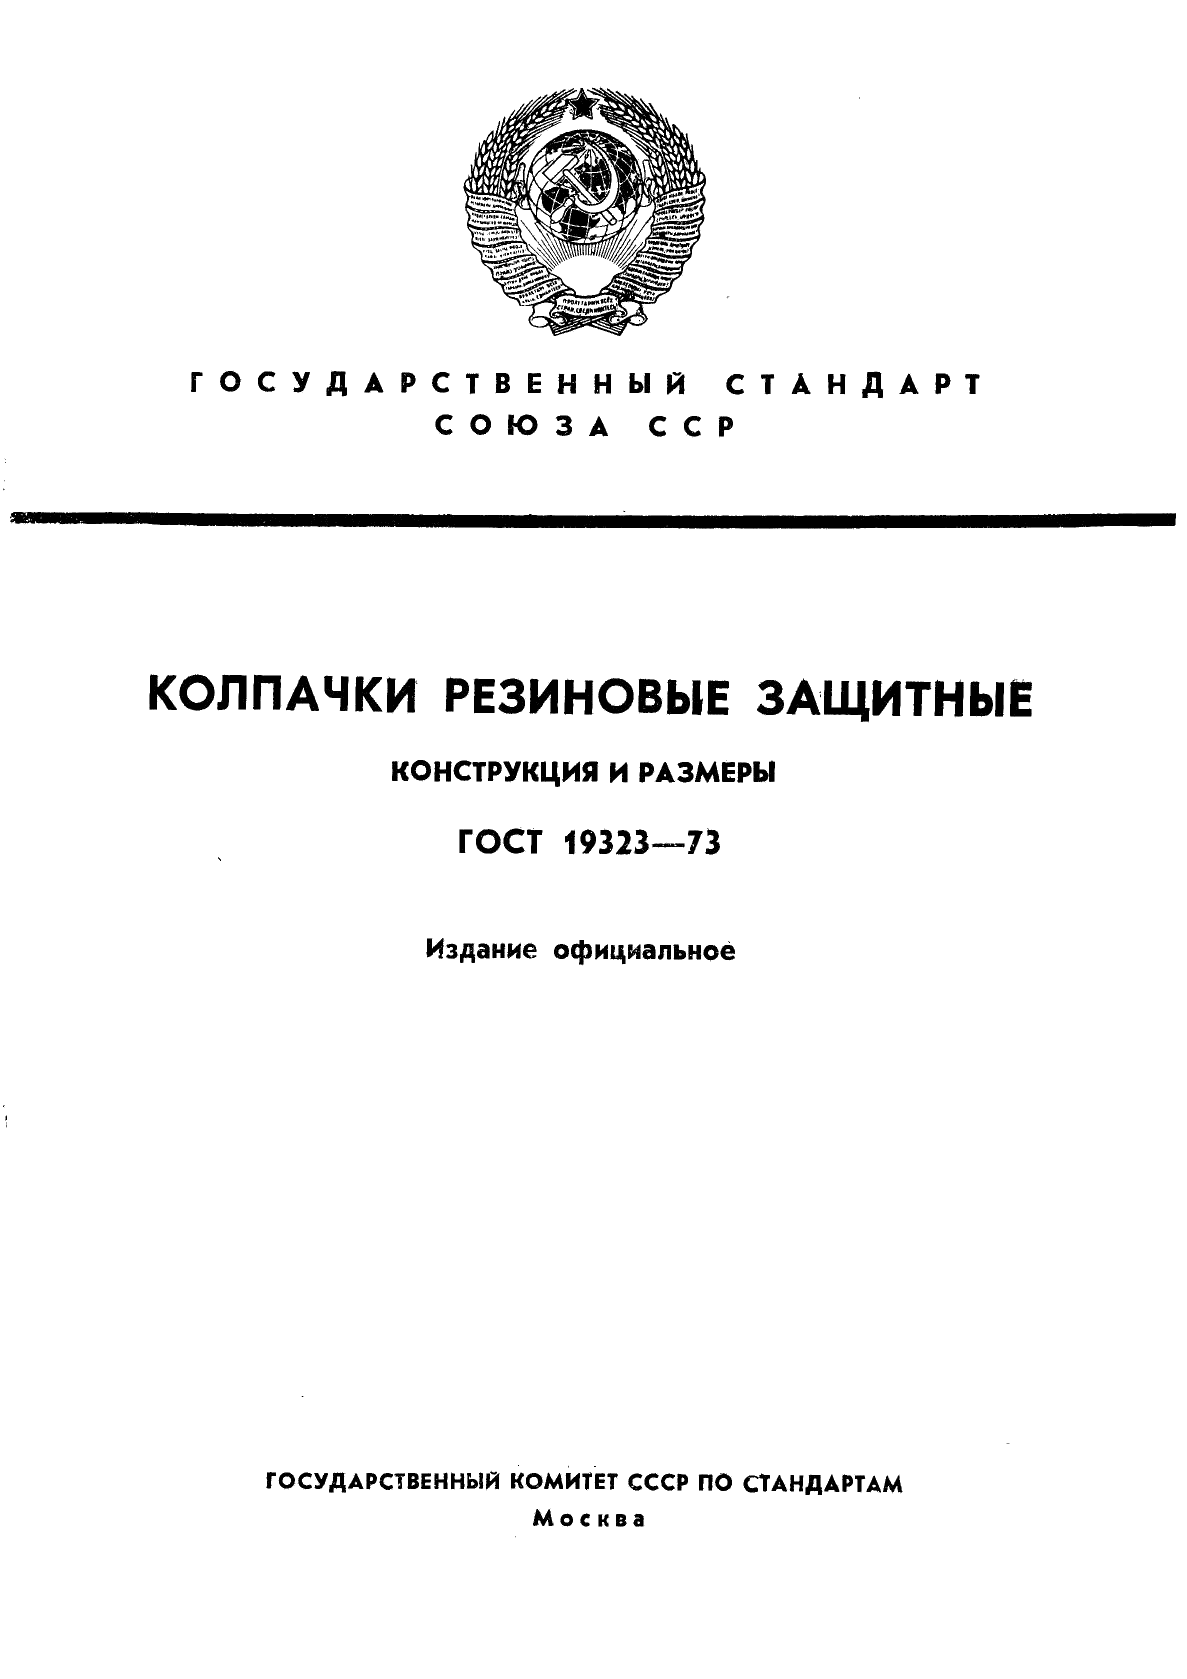  19323-73